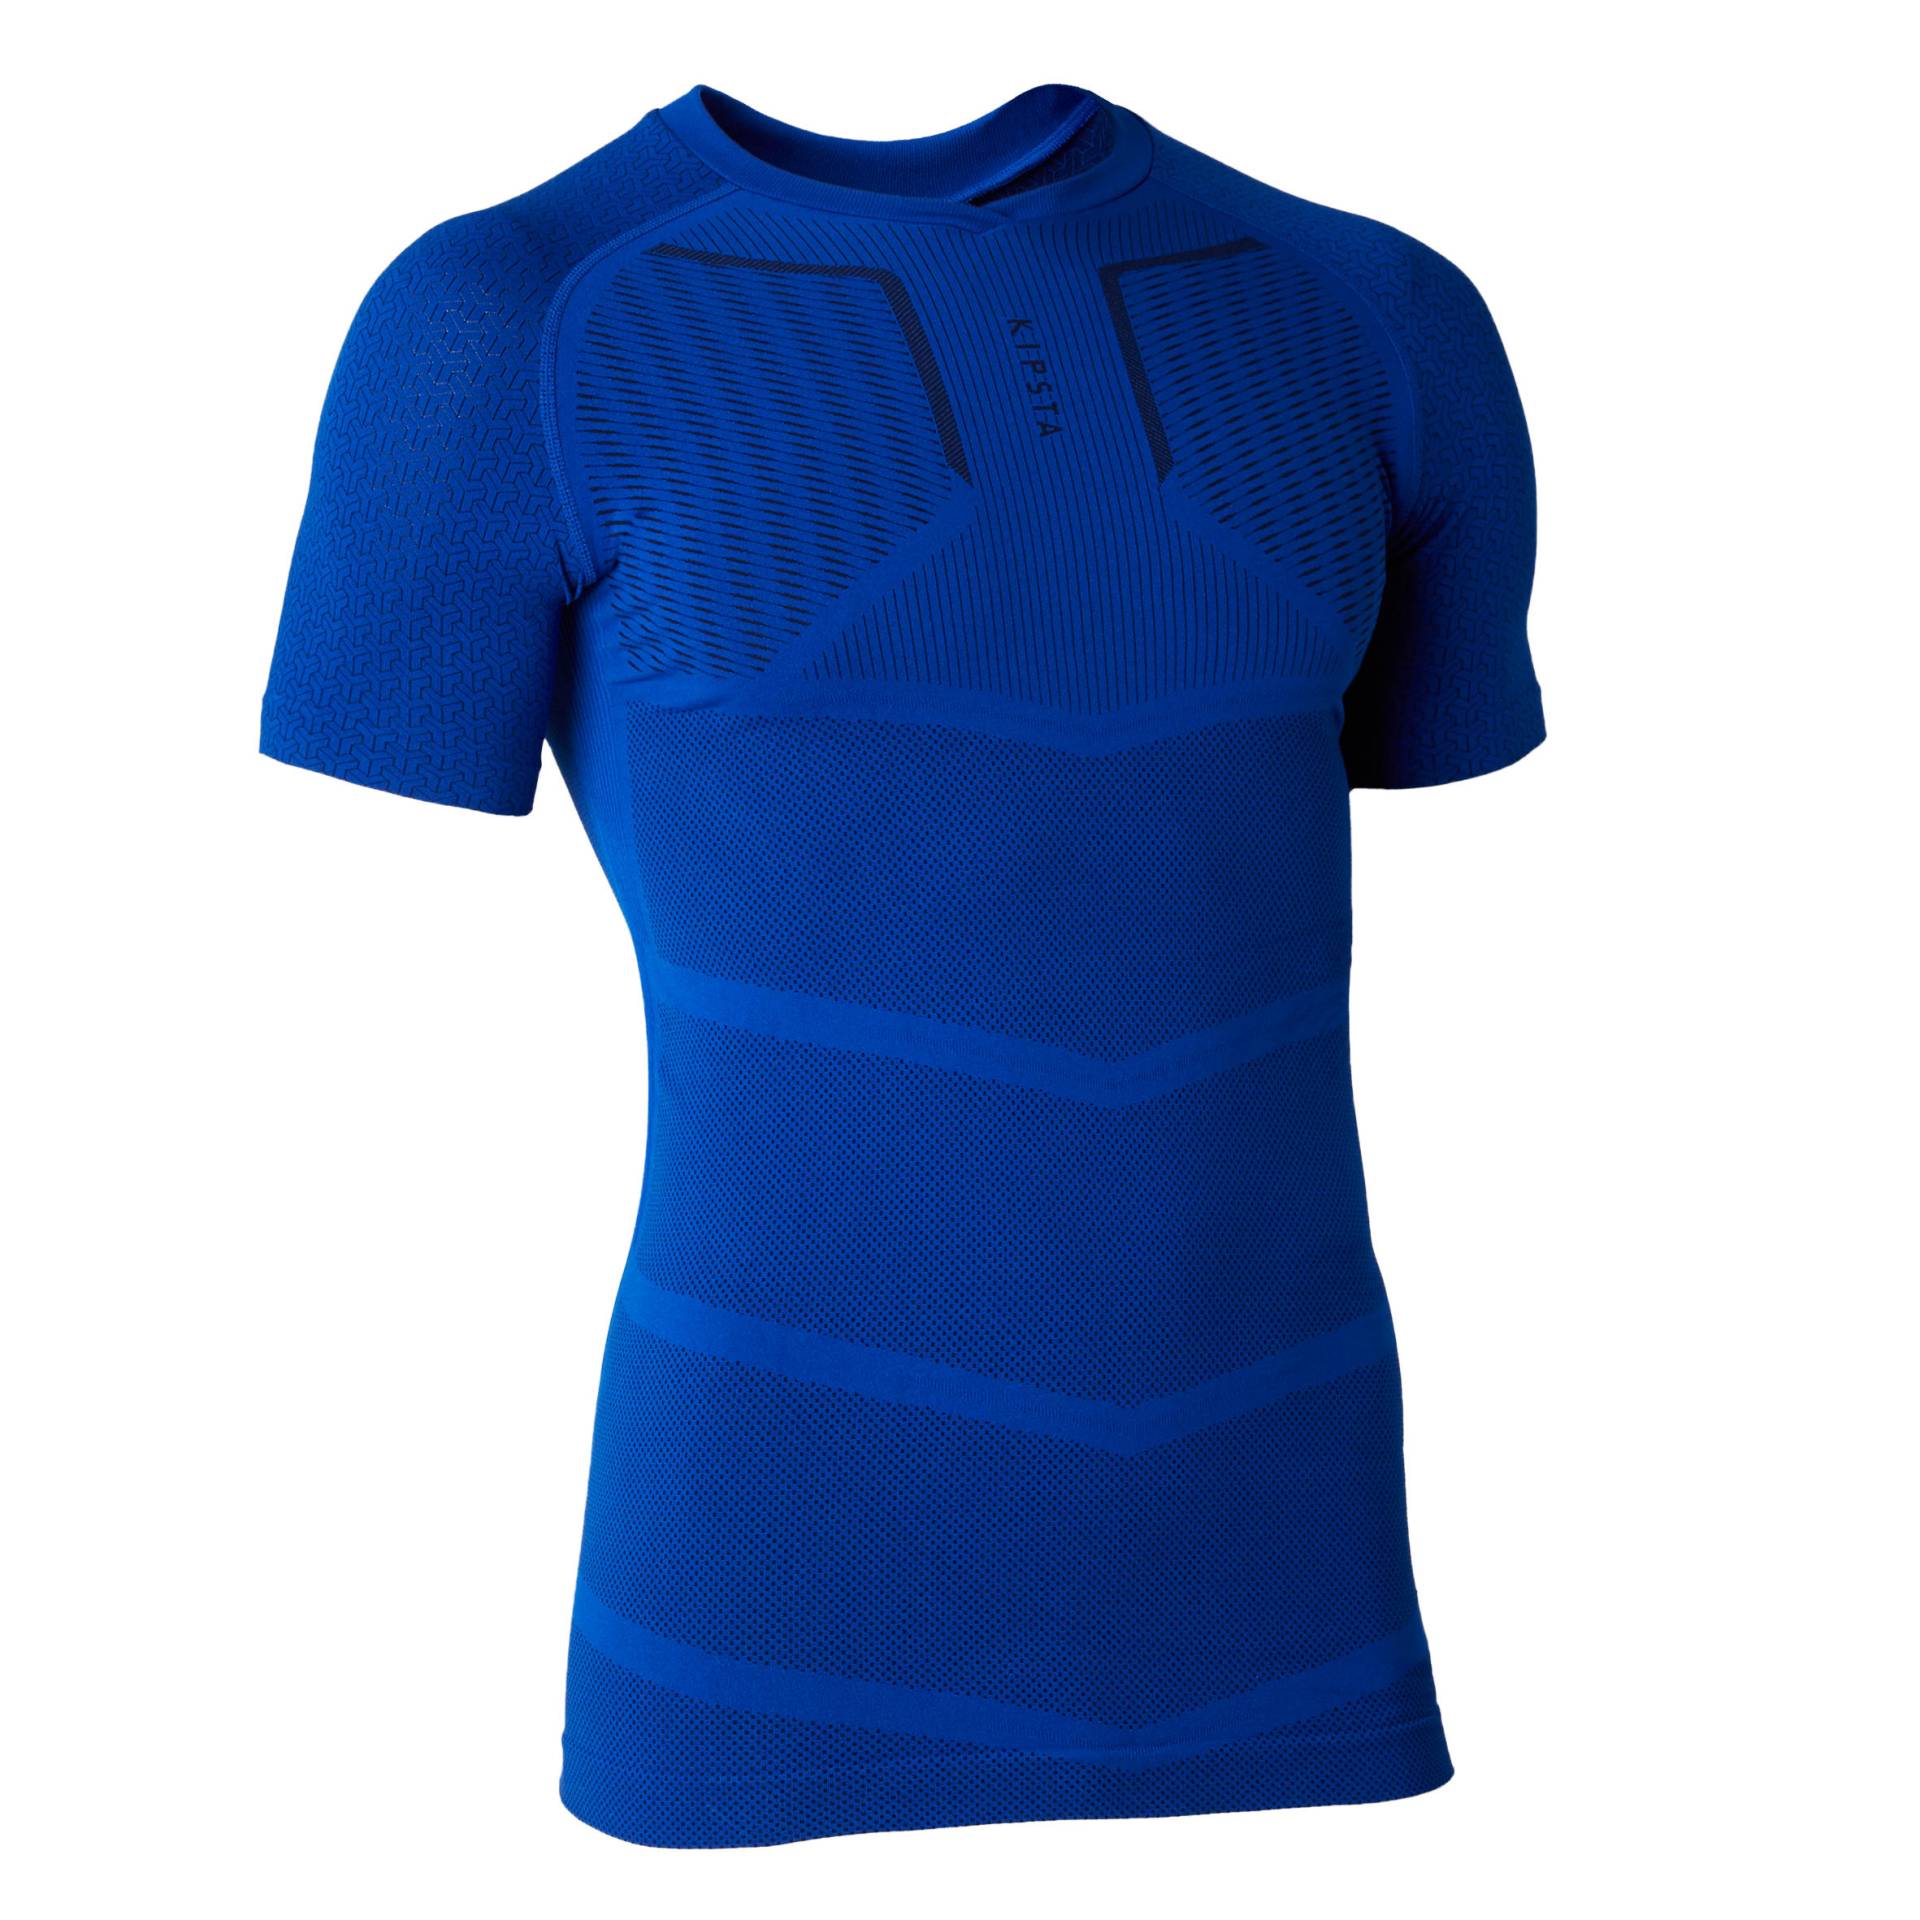 Damen/Herren Fussball Funktionsshirt kurzarm - Keepdry marineblau von KIPSTA